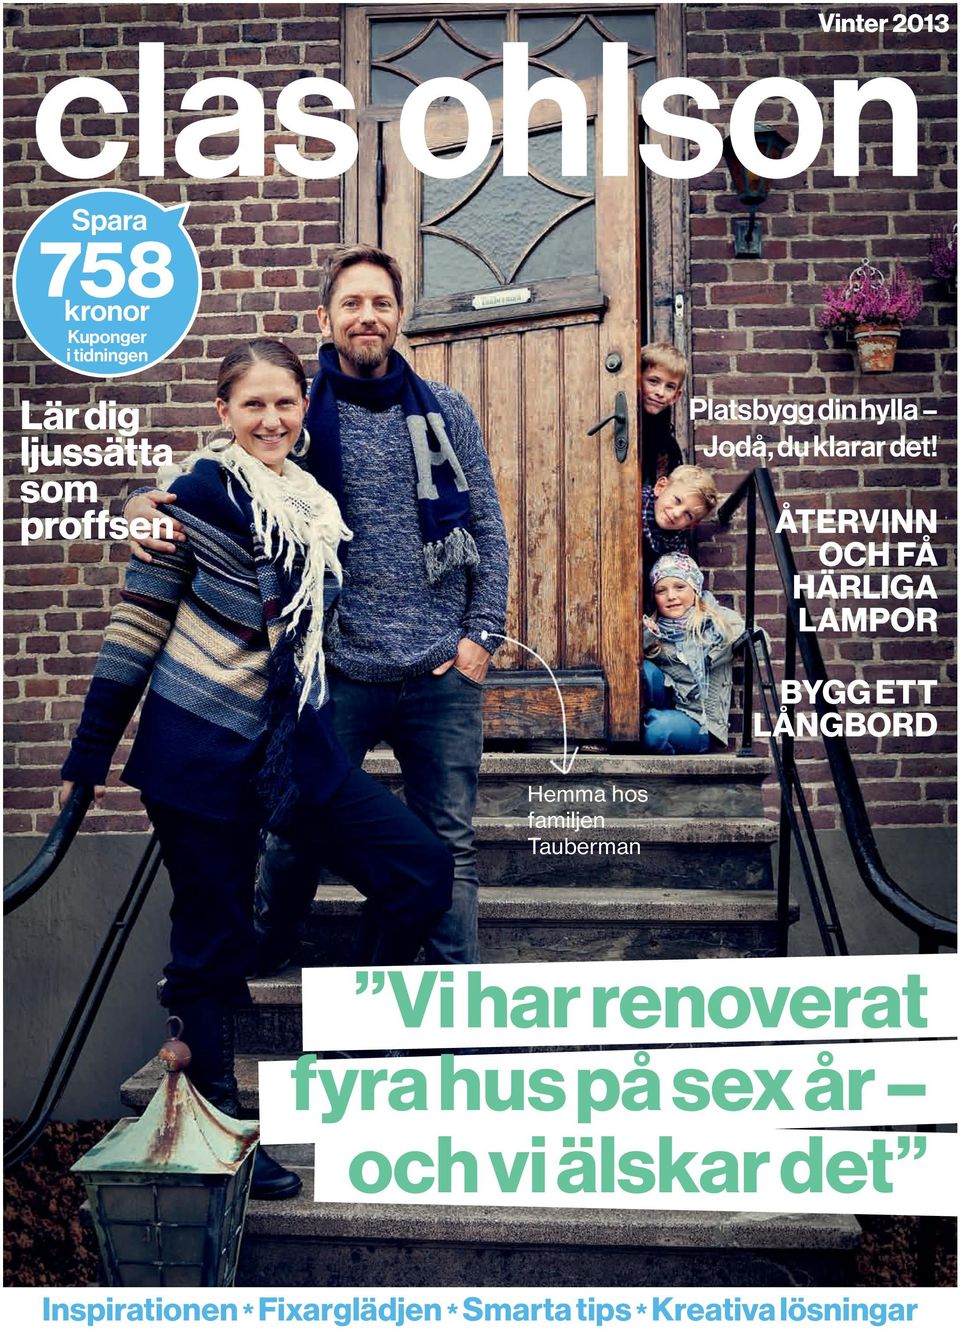 ÅTerViNN och FÅ HärLigA LAmPor BYgg ett LÅNgBord Hemma hos familjen Tauberman